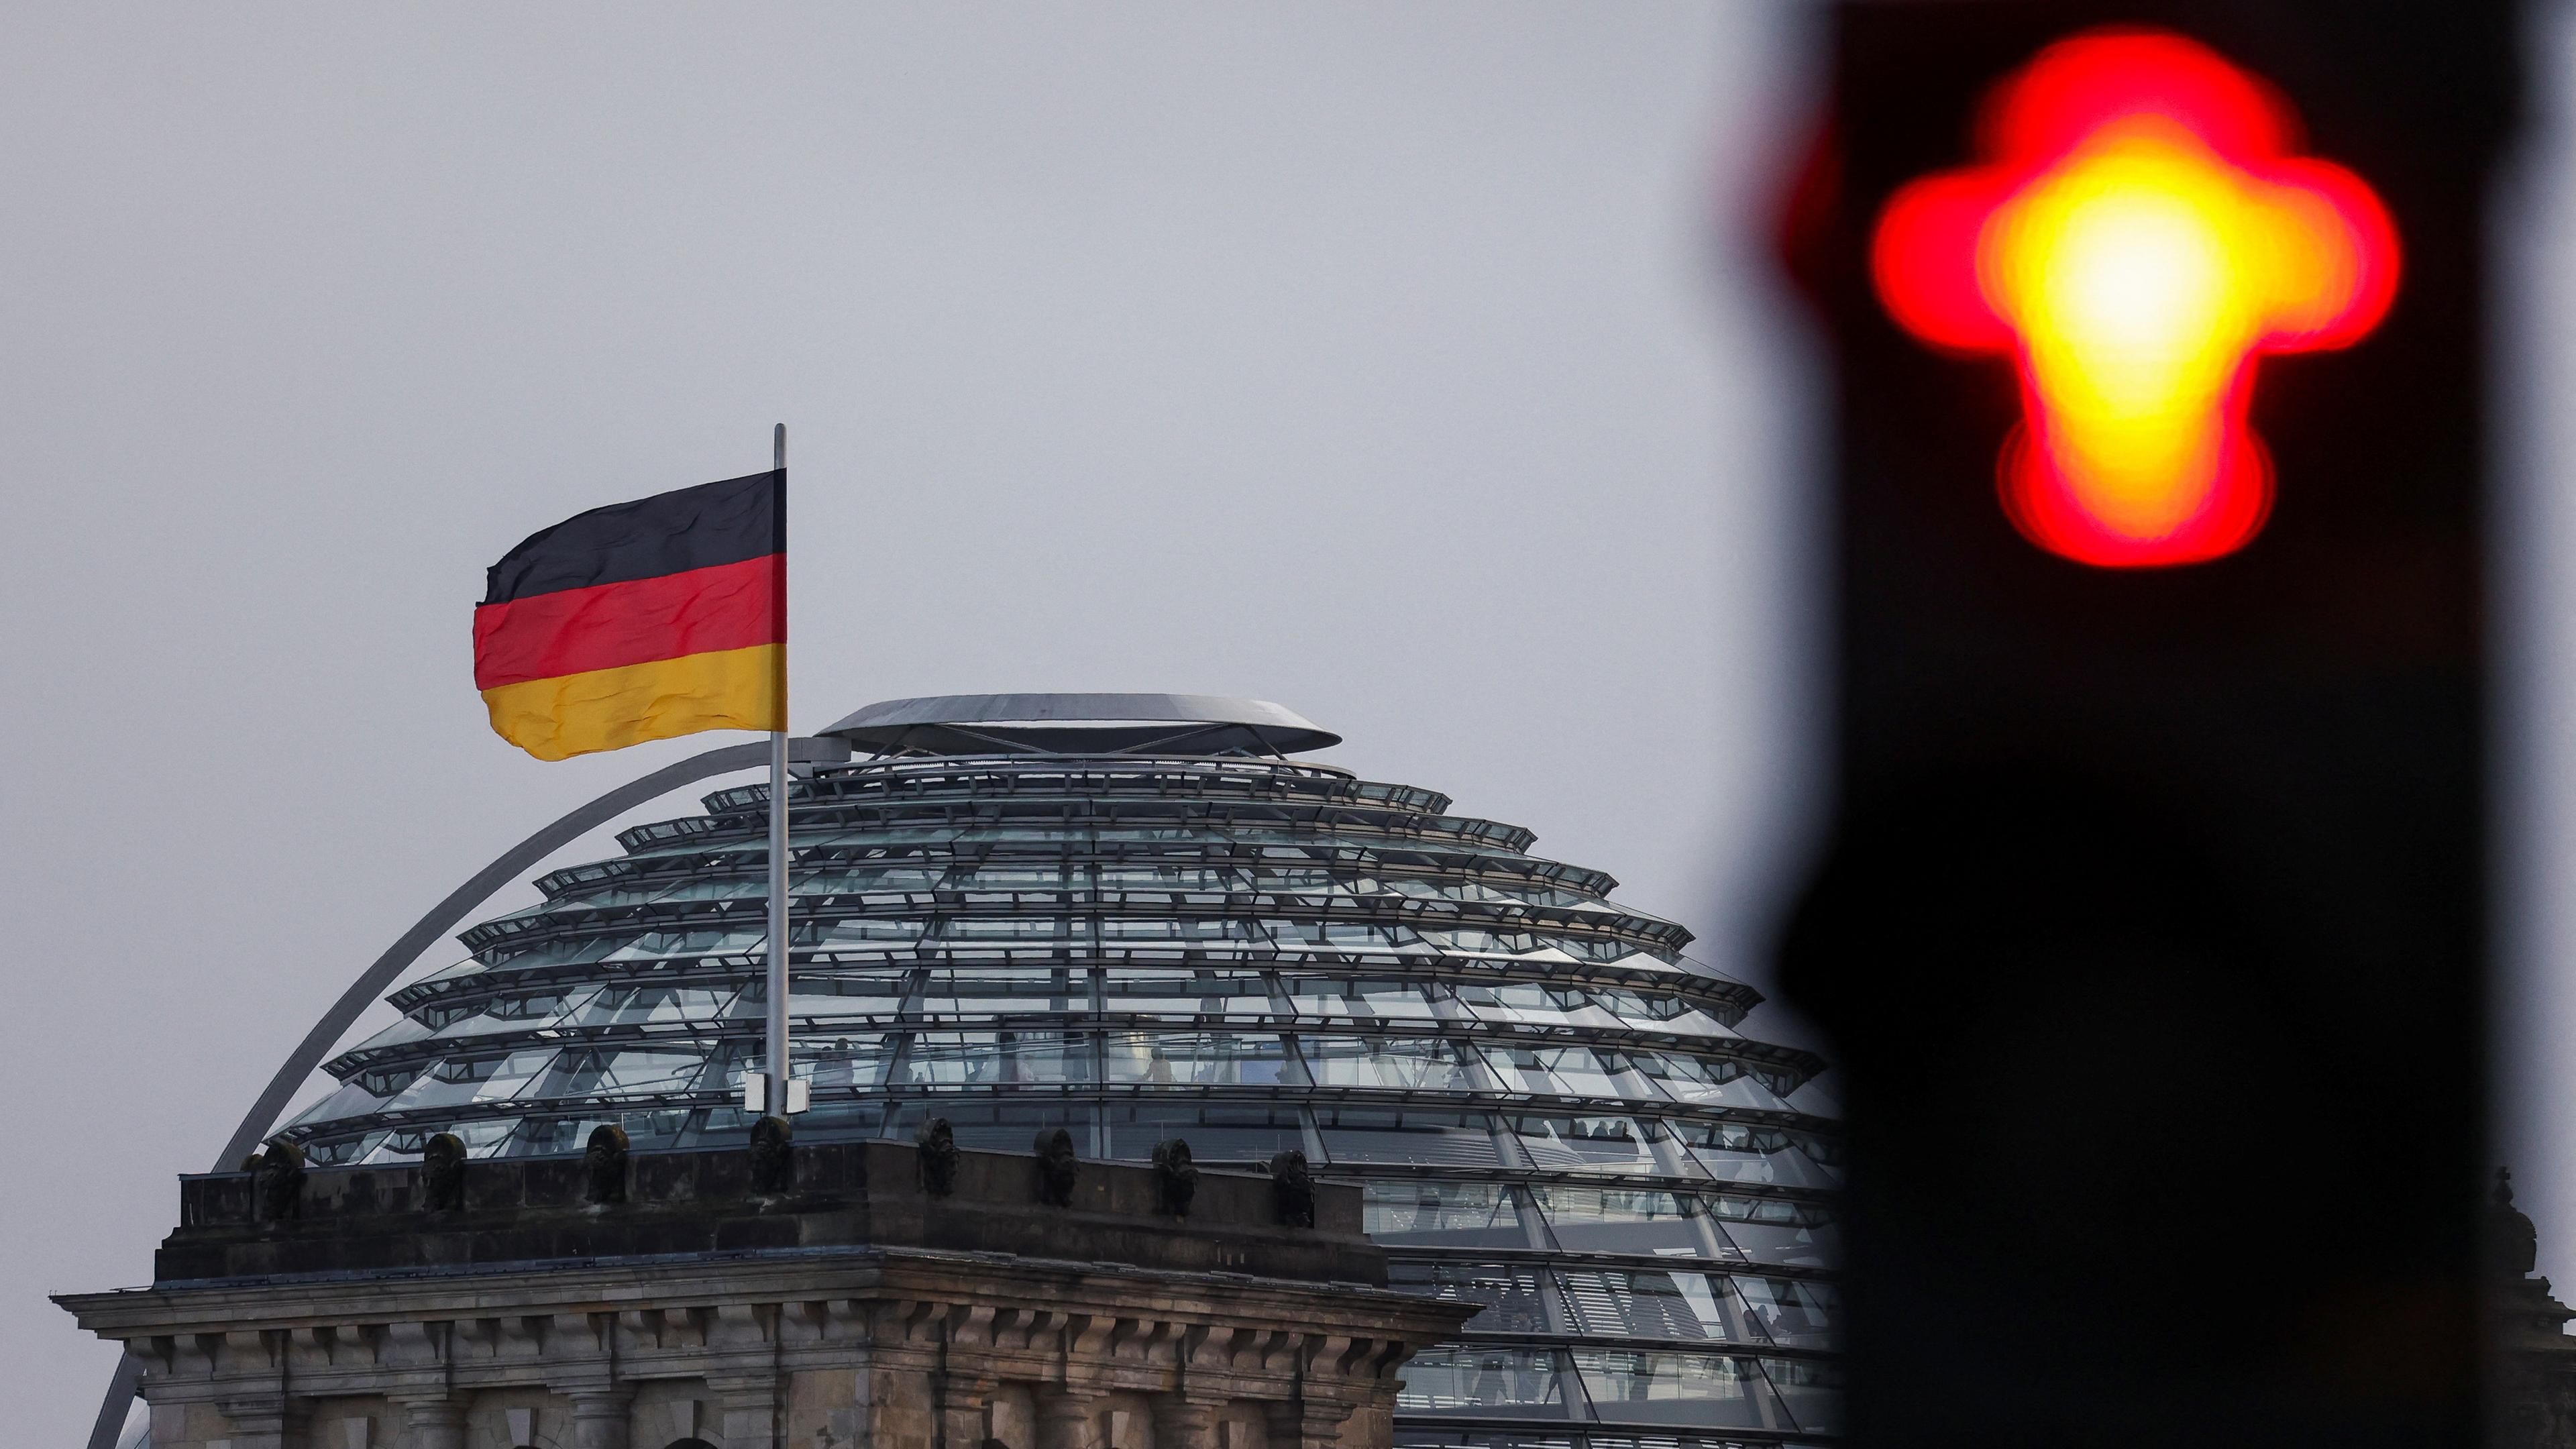 Der Bundestag von Außen. Rechts auf dem Bild ist eine rote Ampel zu sehen.